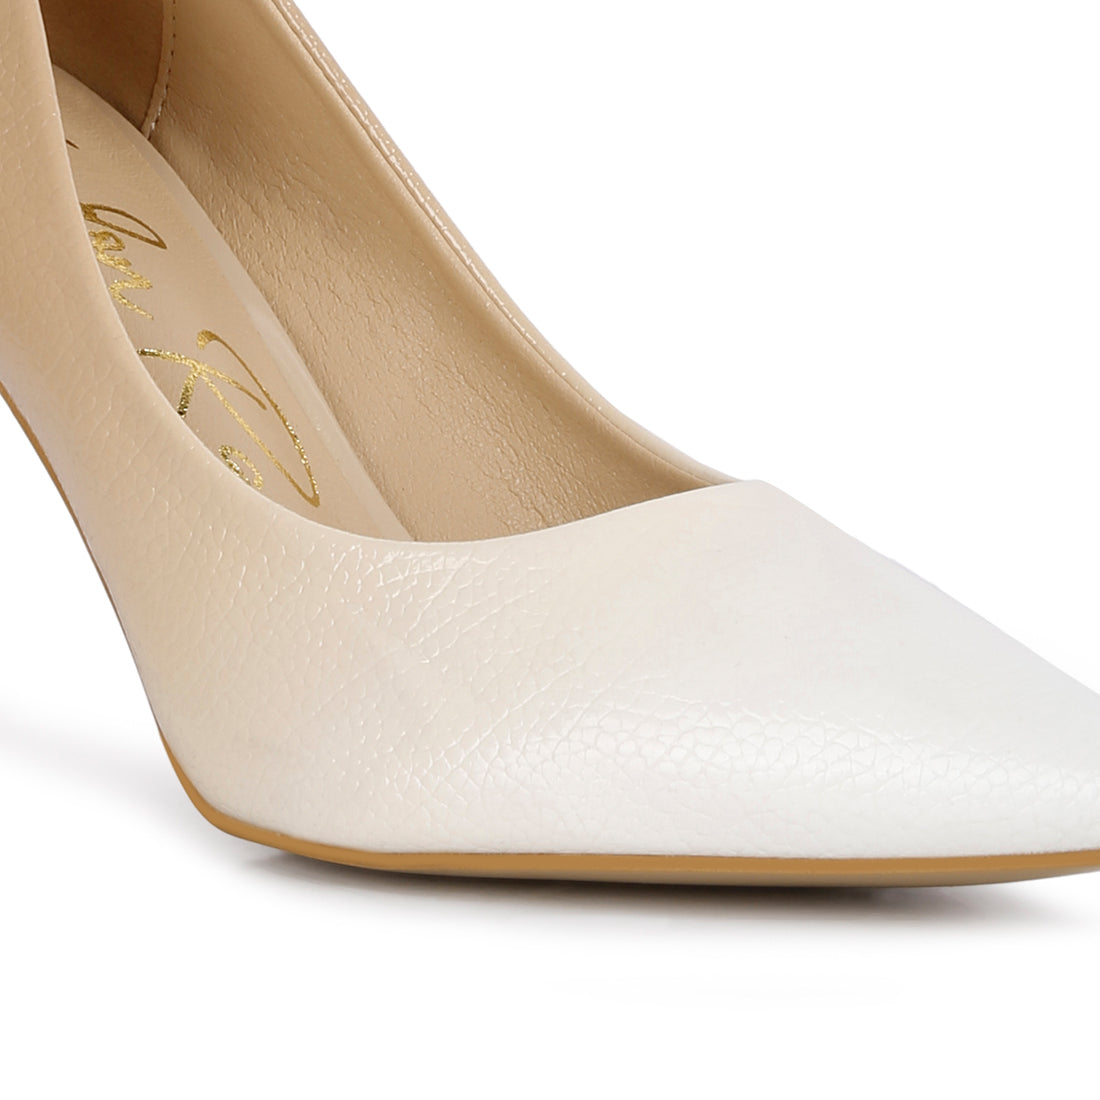 ombre mid heel pumps#color_beige